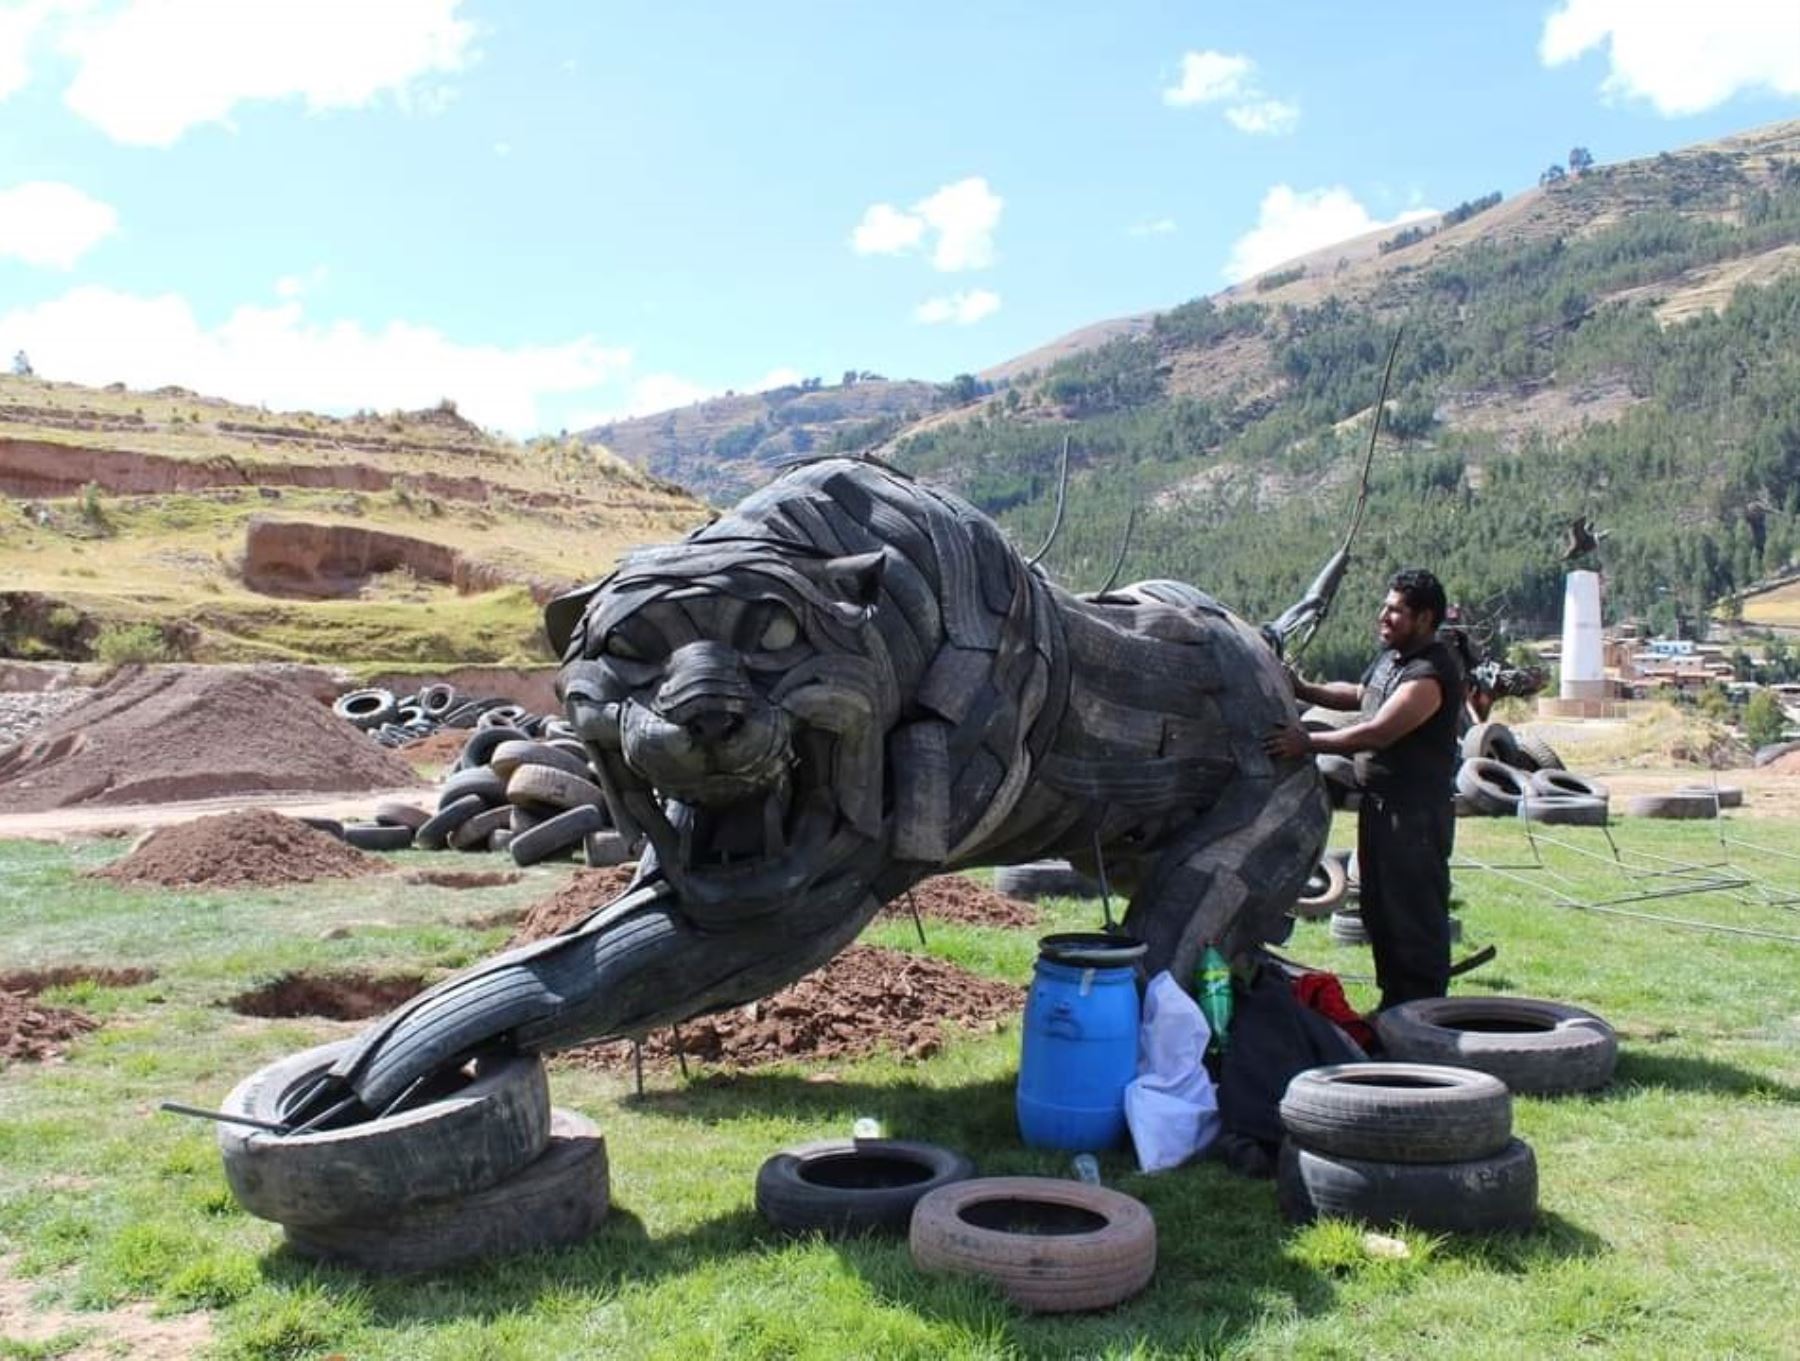 Así luce el parque temático Cosmovisión Andina hecho de neumáticos que se ubica en el distrito de Checacupe, provincia cusqueña de Canchis.